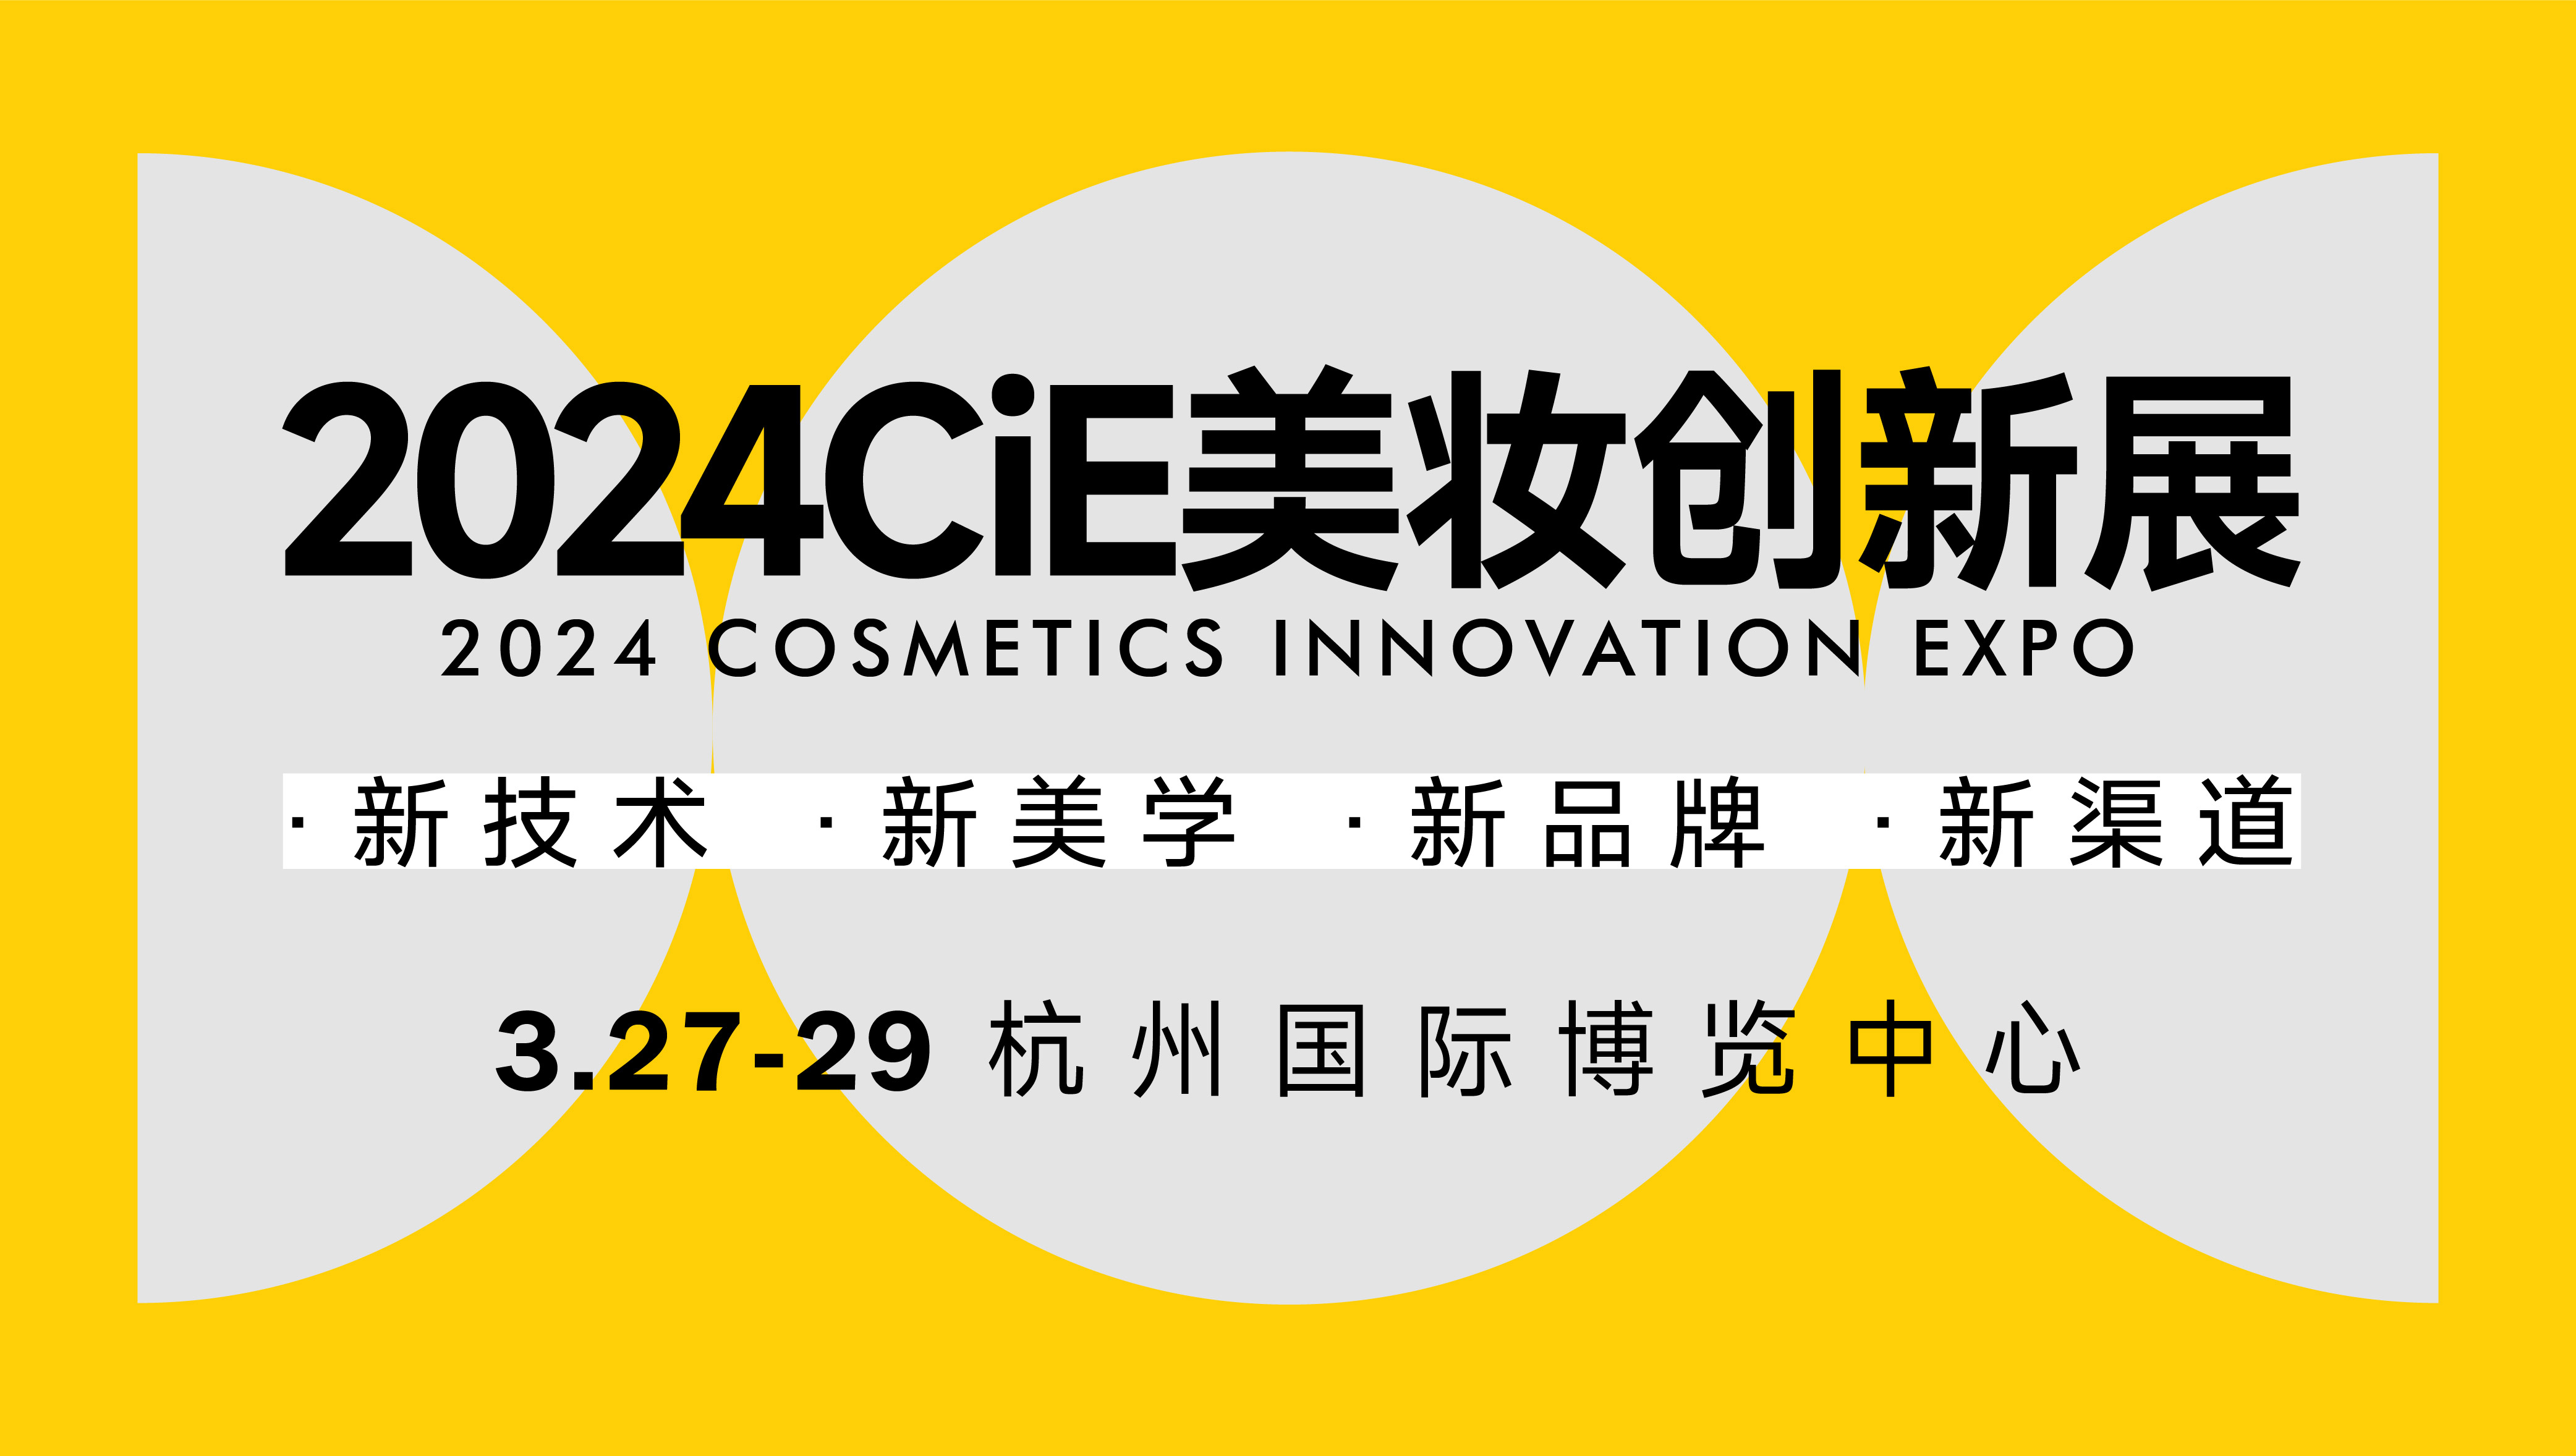 CiE杭州美妆创新展，3月27-29日开幕，免费逛展！